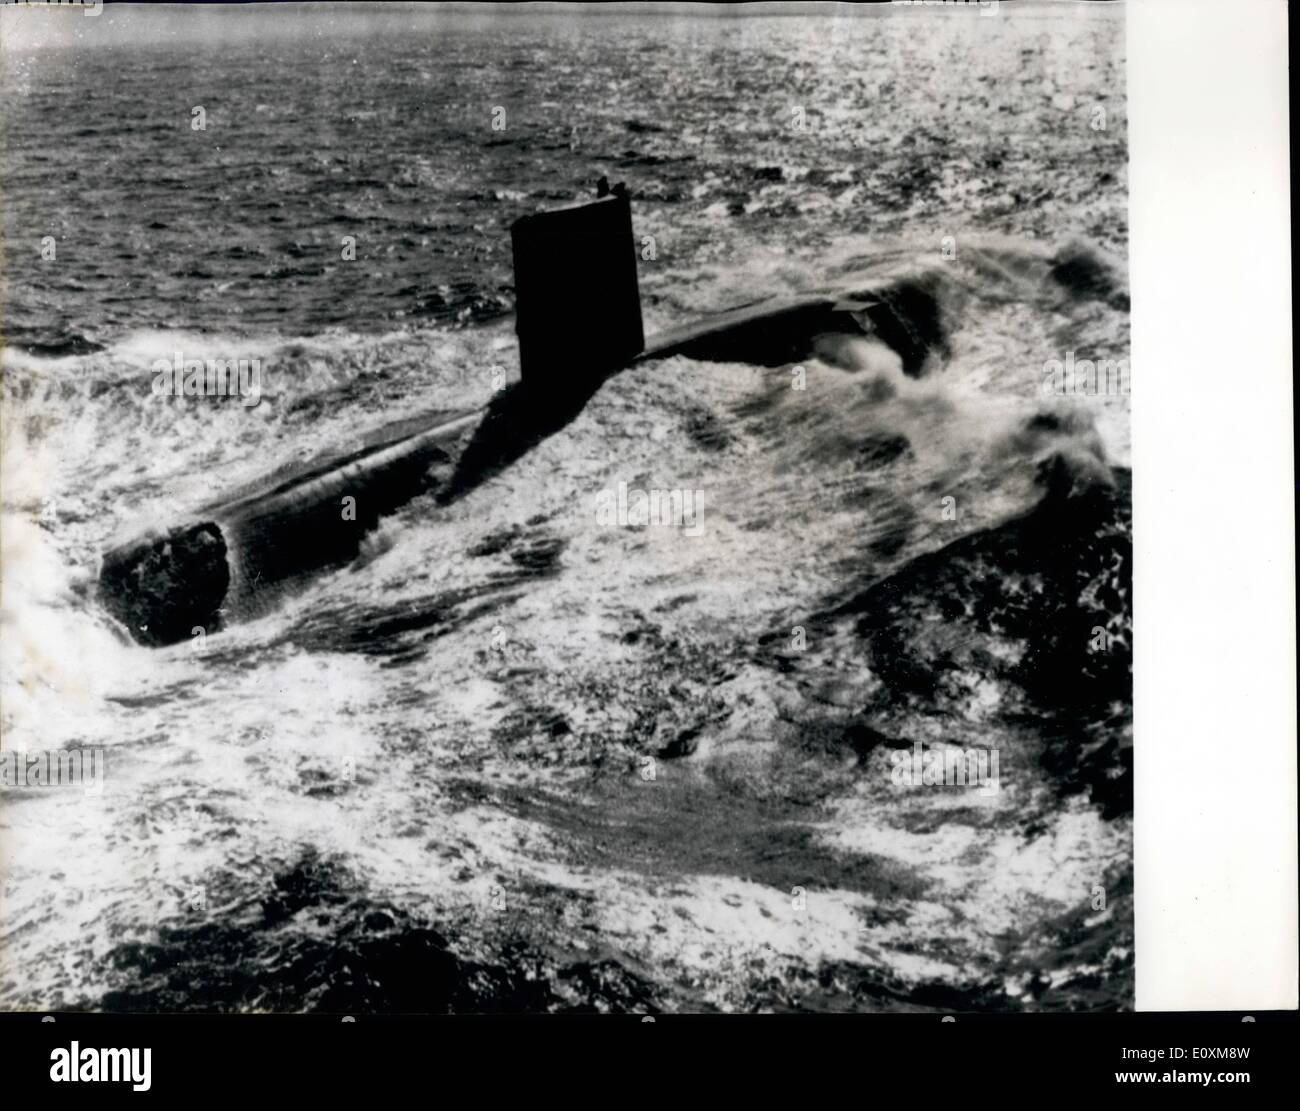 Abril 04, 1967 - submarino nuclear valiente superficies después de grabar la travesía desde Singapur: H.M.S. Valiant (Comandante Peter Herbert), los submarinos de propulsión nuclear (3.500 toneladas), mostrado en velocidad después de acuchillamiento fuera el noroeste de Irlanda, en la realización de sus 12.000 millas de viaje submarino desde Singapur - un récord para un submarino británico. Foto de stock